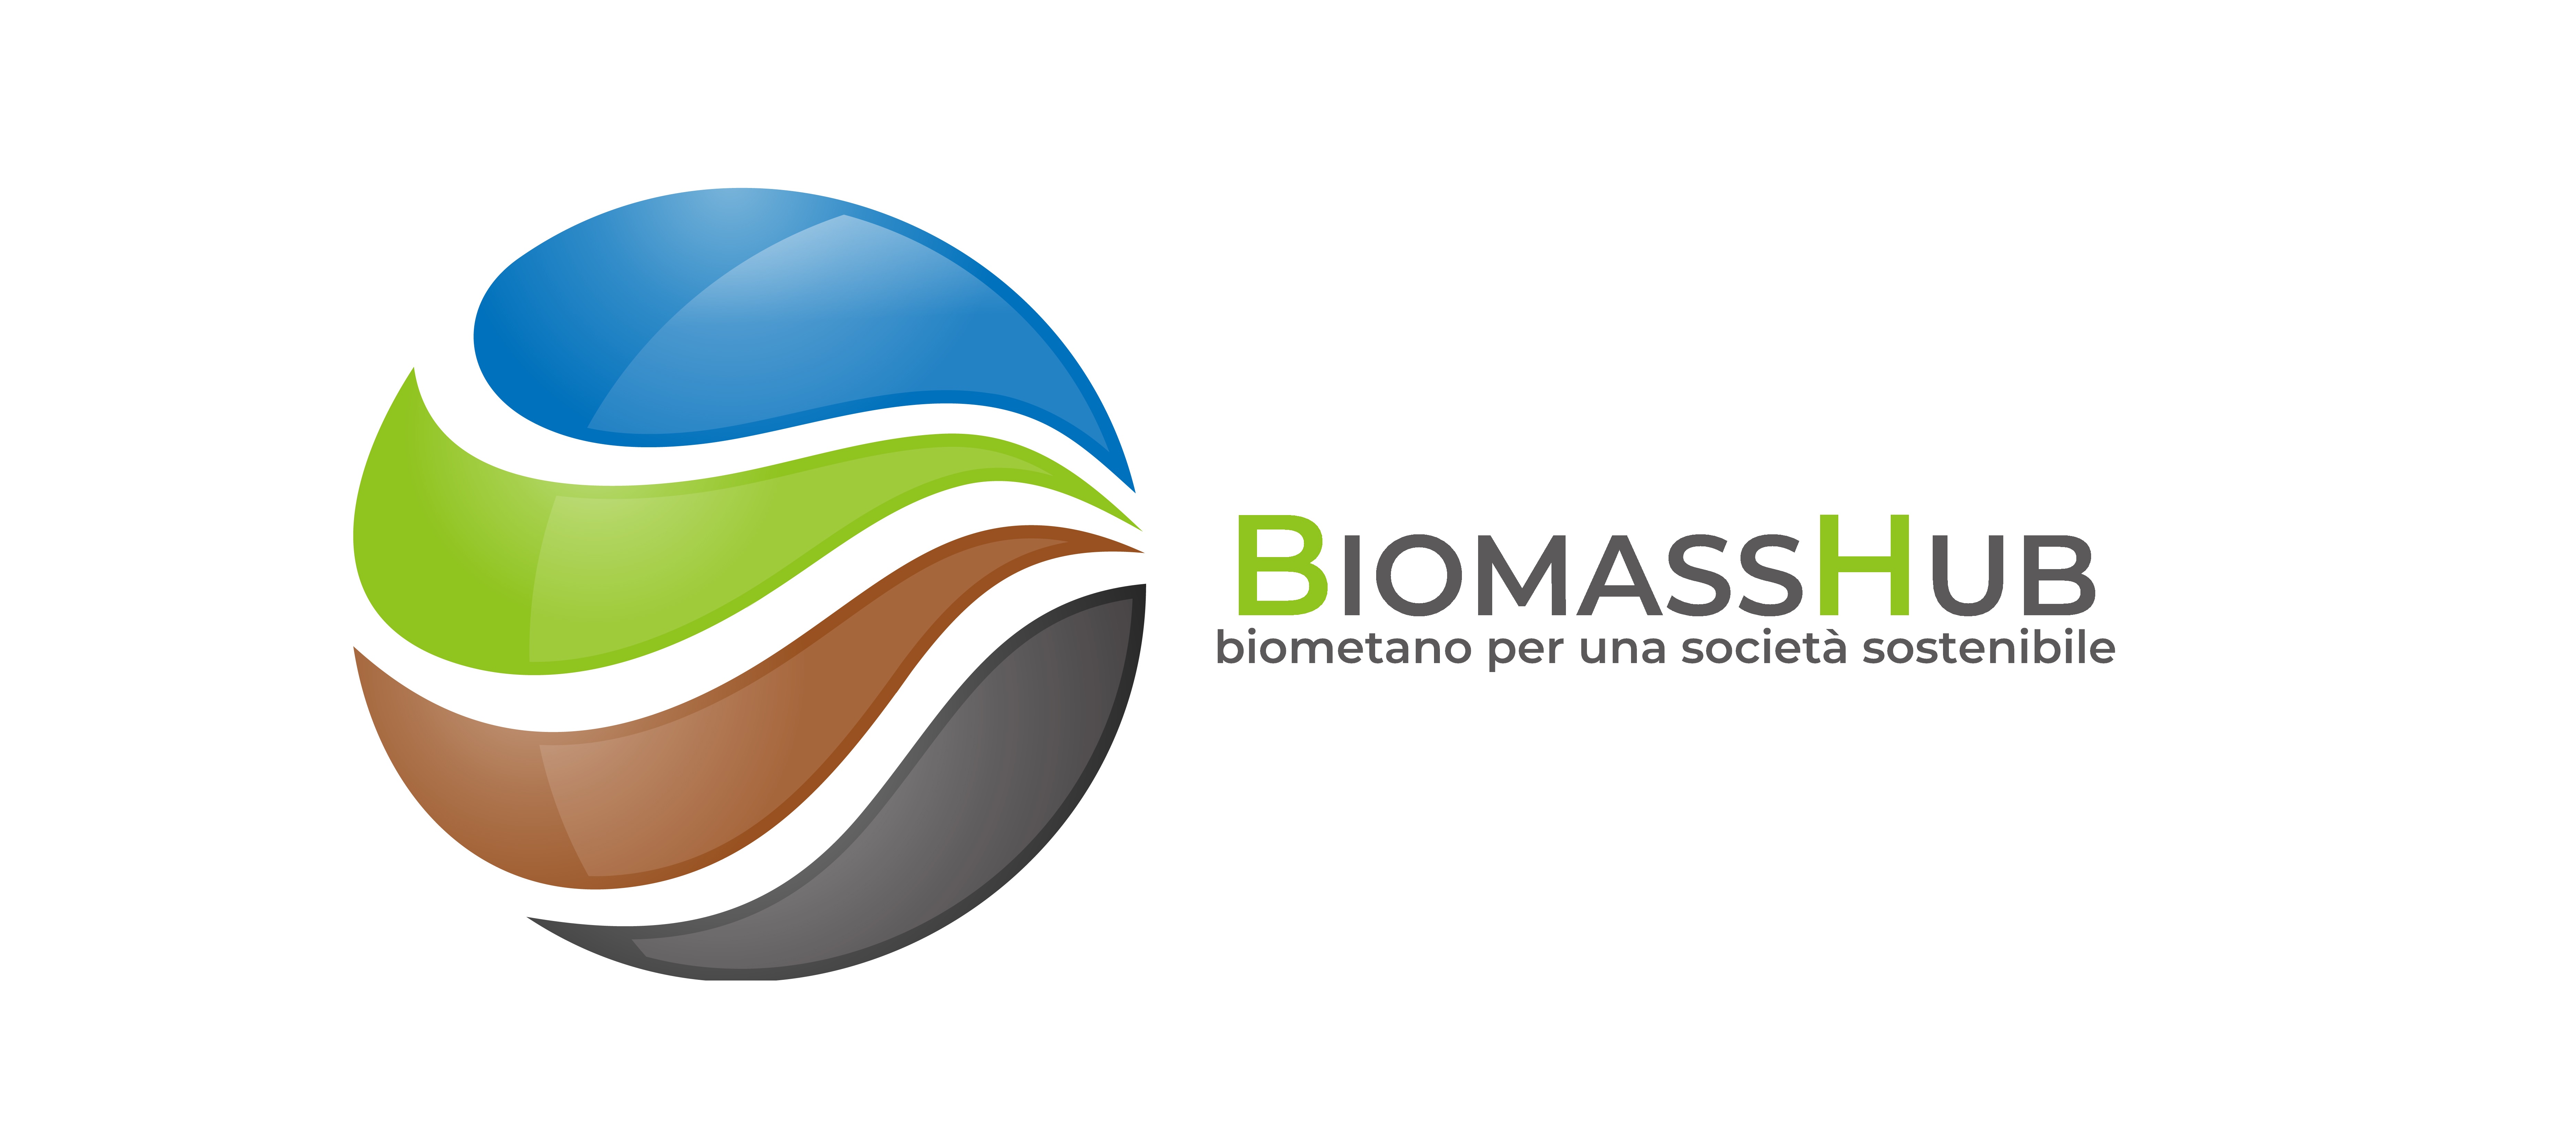 BIOMASShub_logo3.jpg